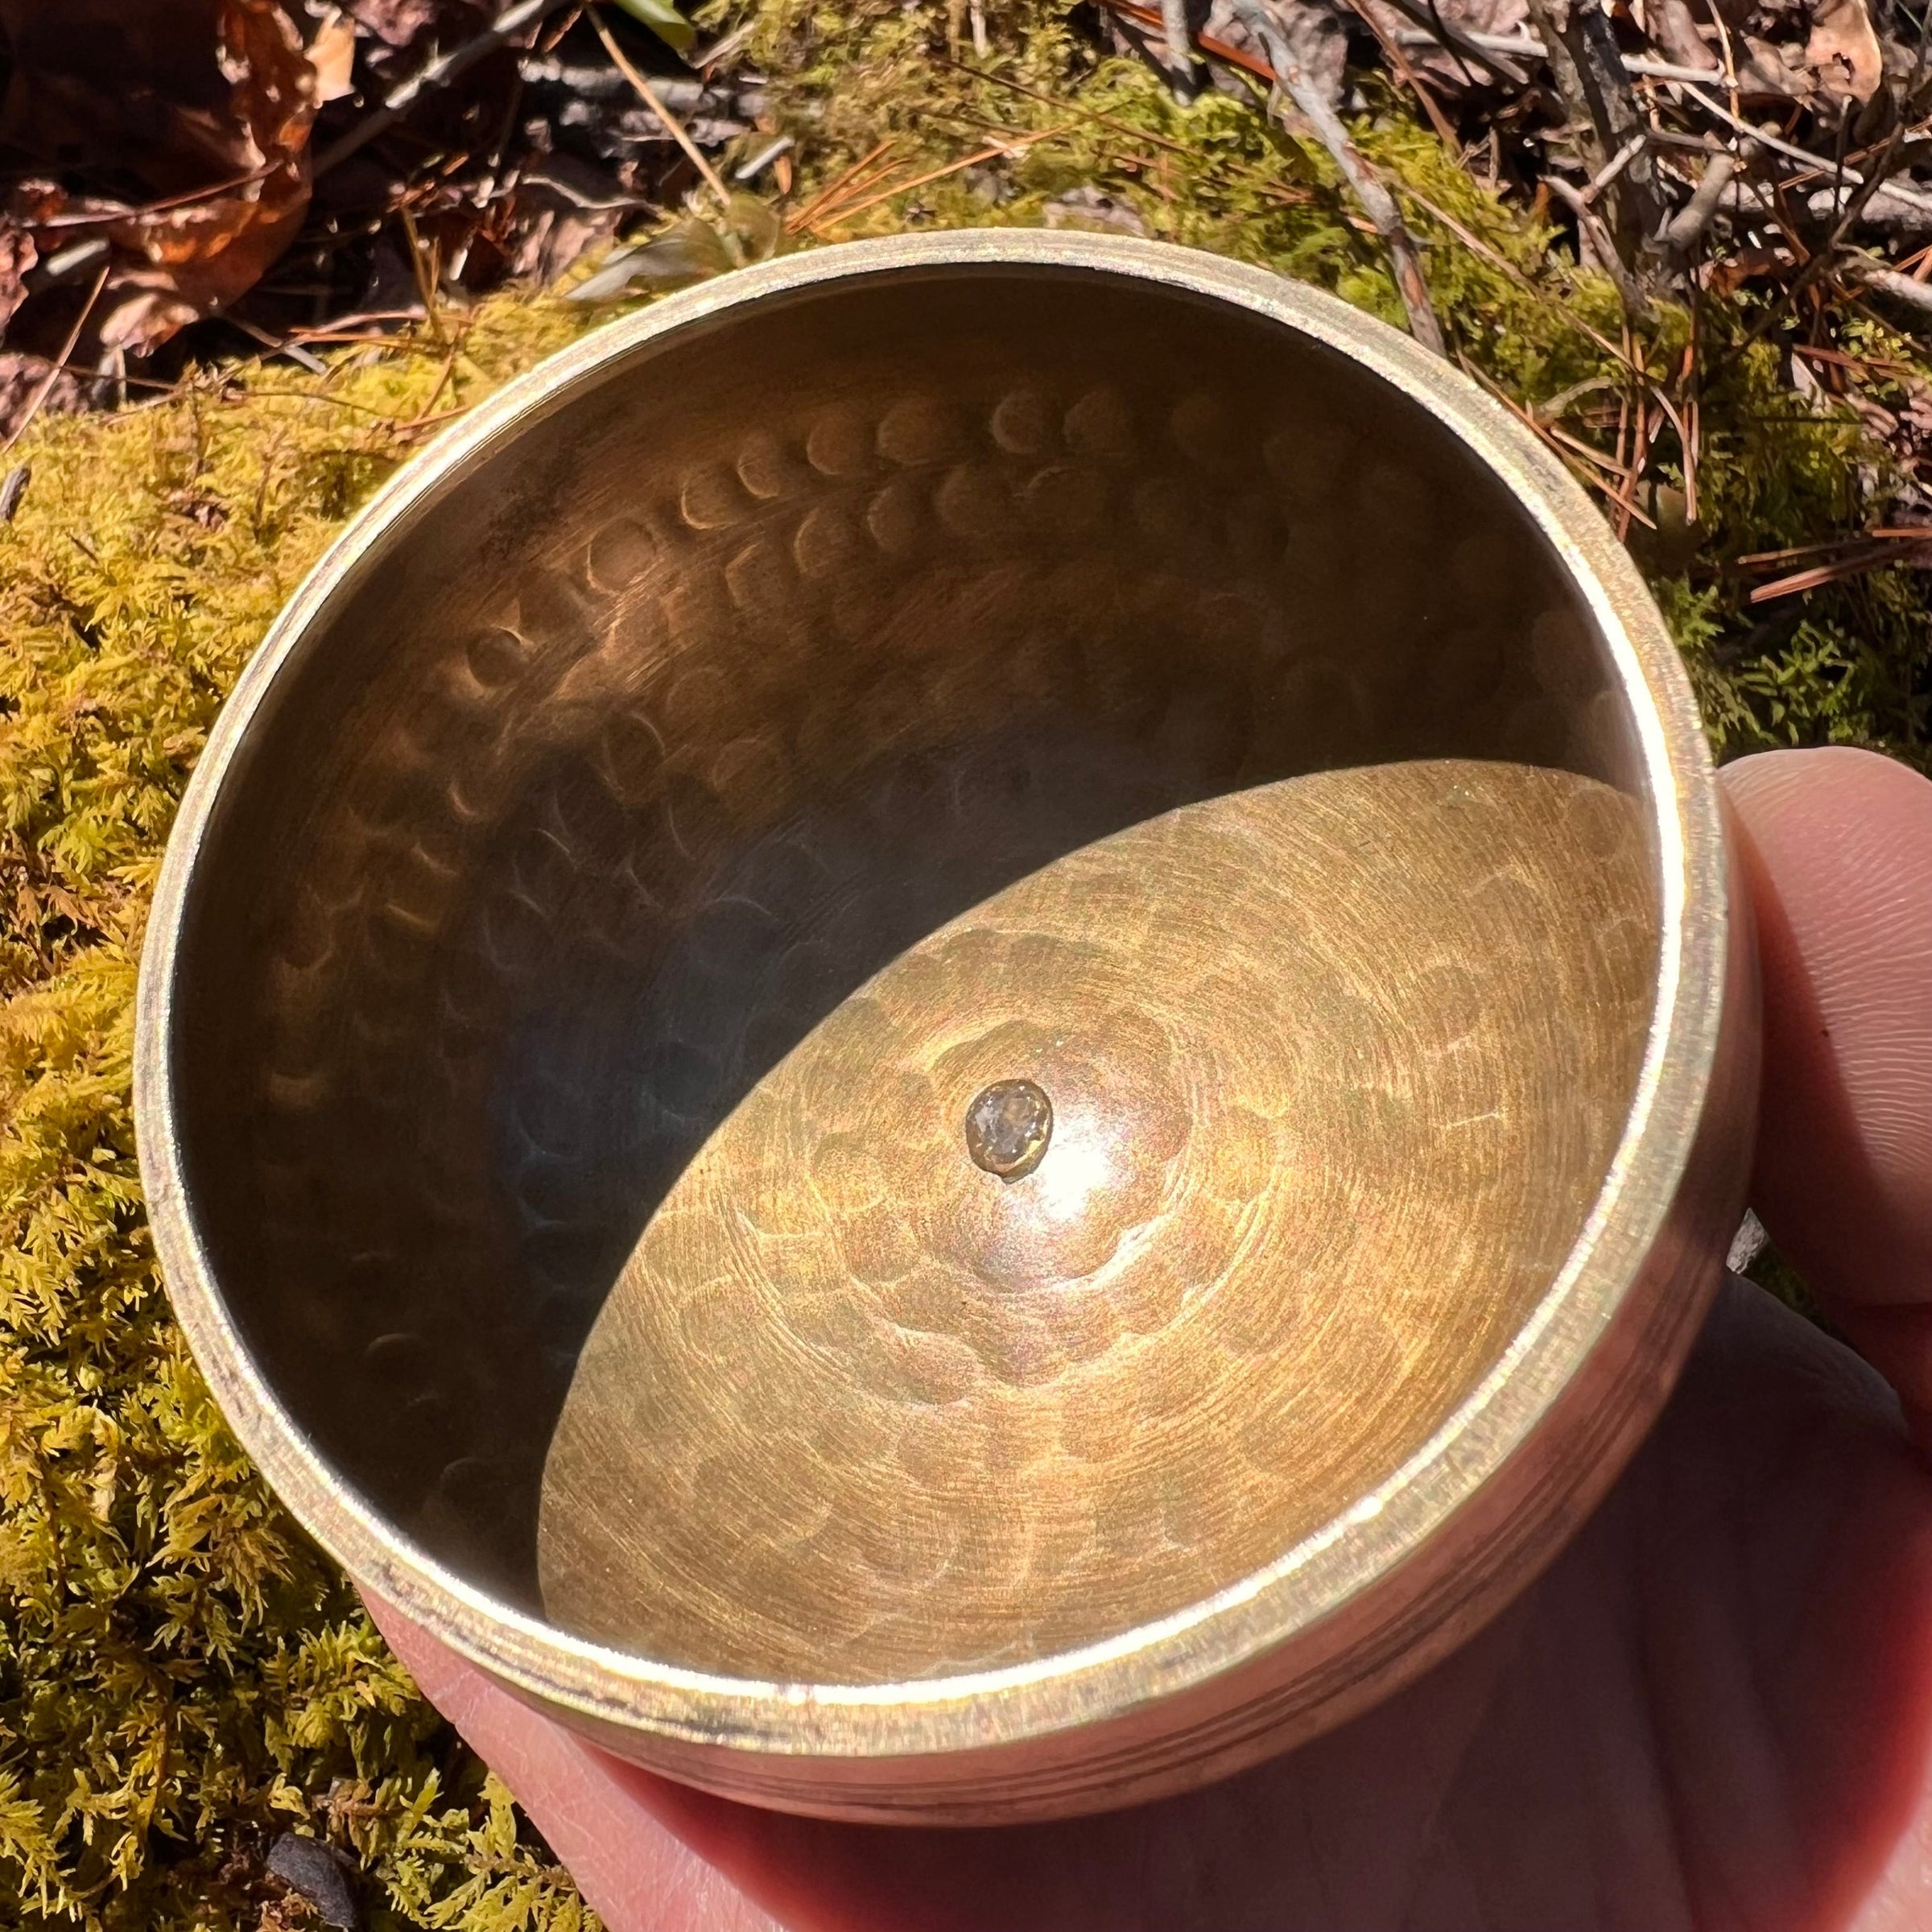 Tibetan Singing Bowl with Phenacite #10-Moldavite Life